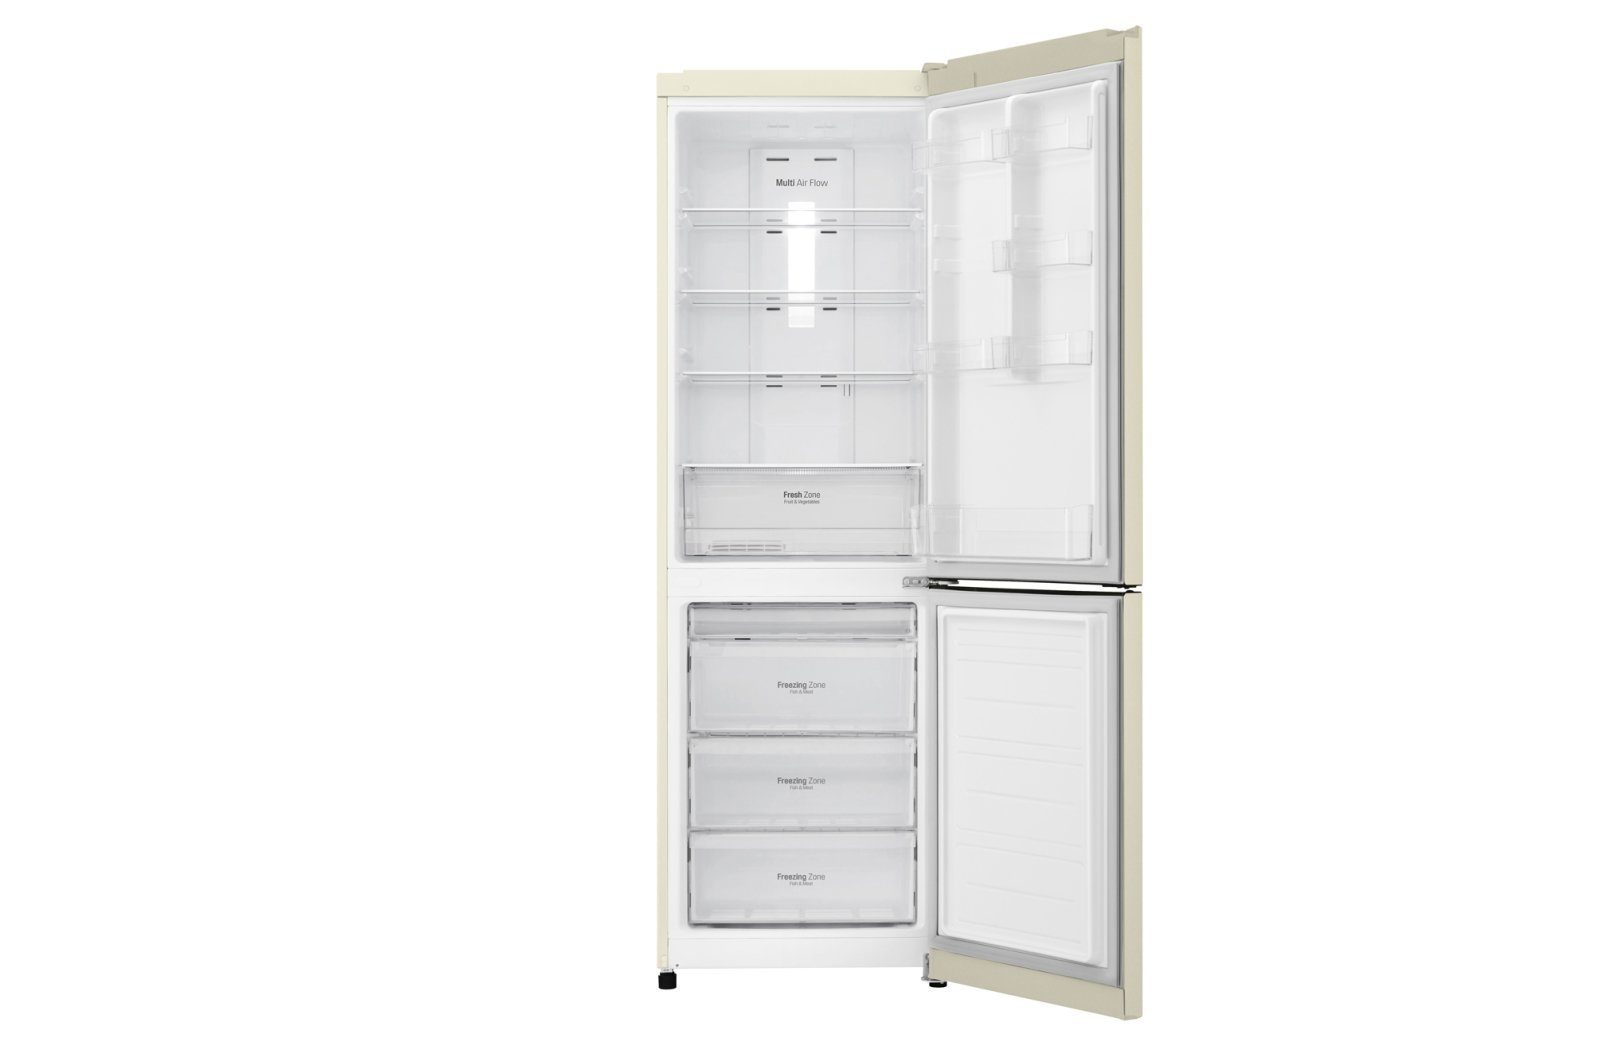 холодильник lg ga-b419sygl, купить в Красноярске холодильник lg ga-b419sygl,  купить в Красноярске дешево холодильник lg ga-b419sygl, купить в Красноярске минимальной цене холодильник lg ga-b419sygl